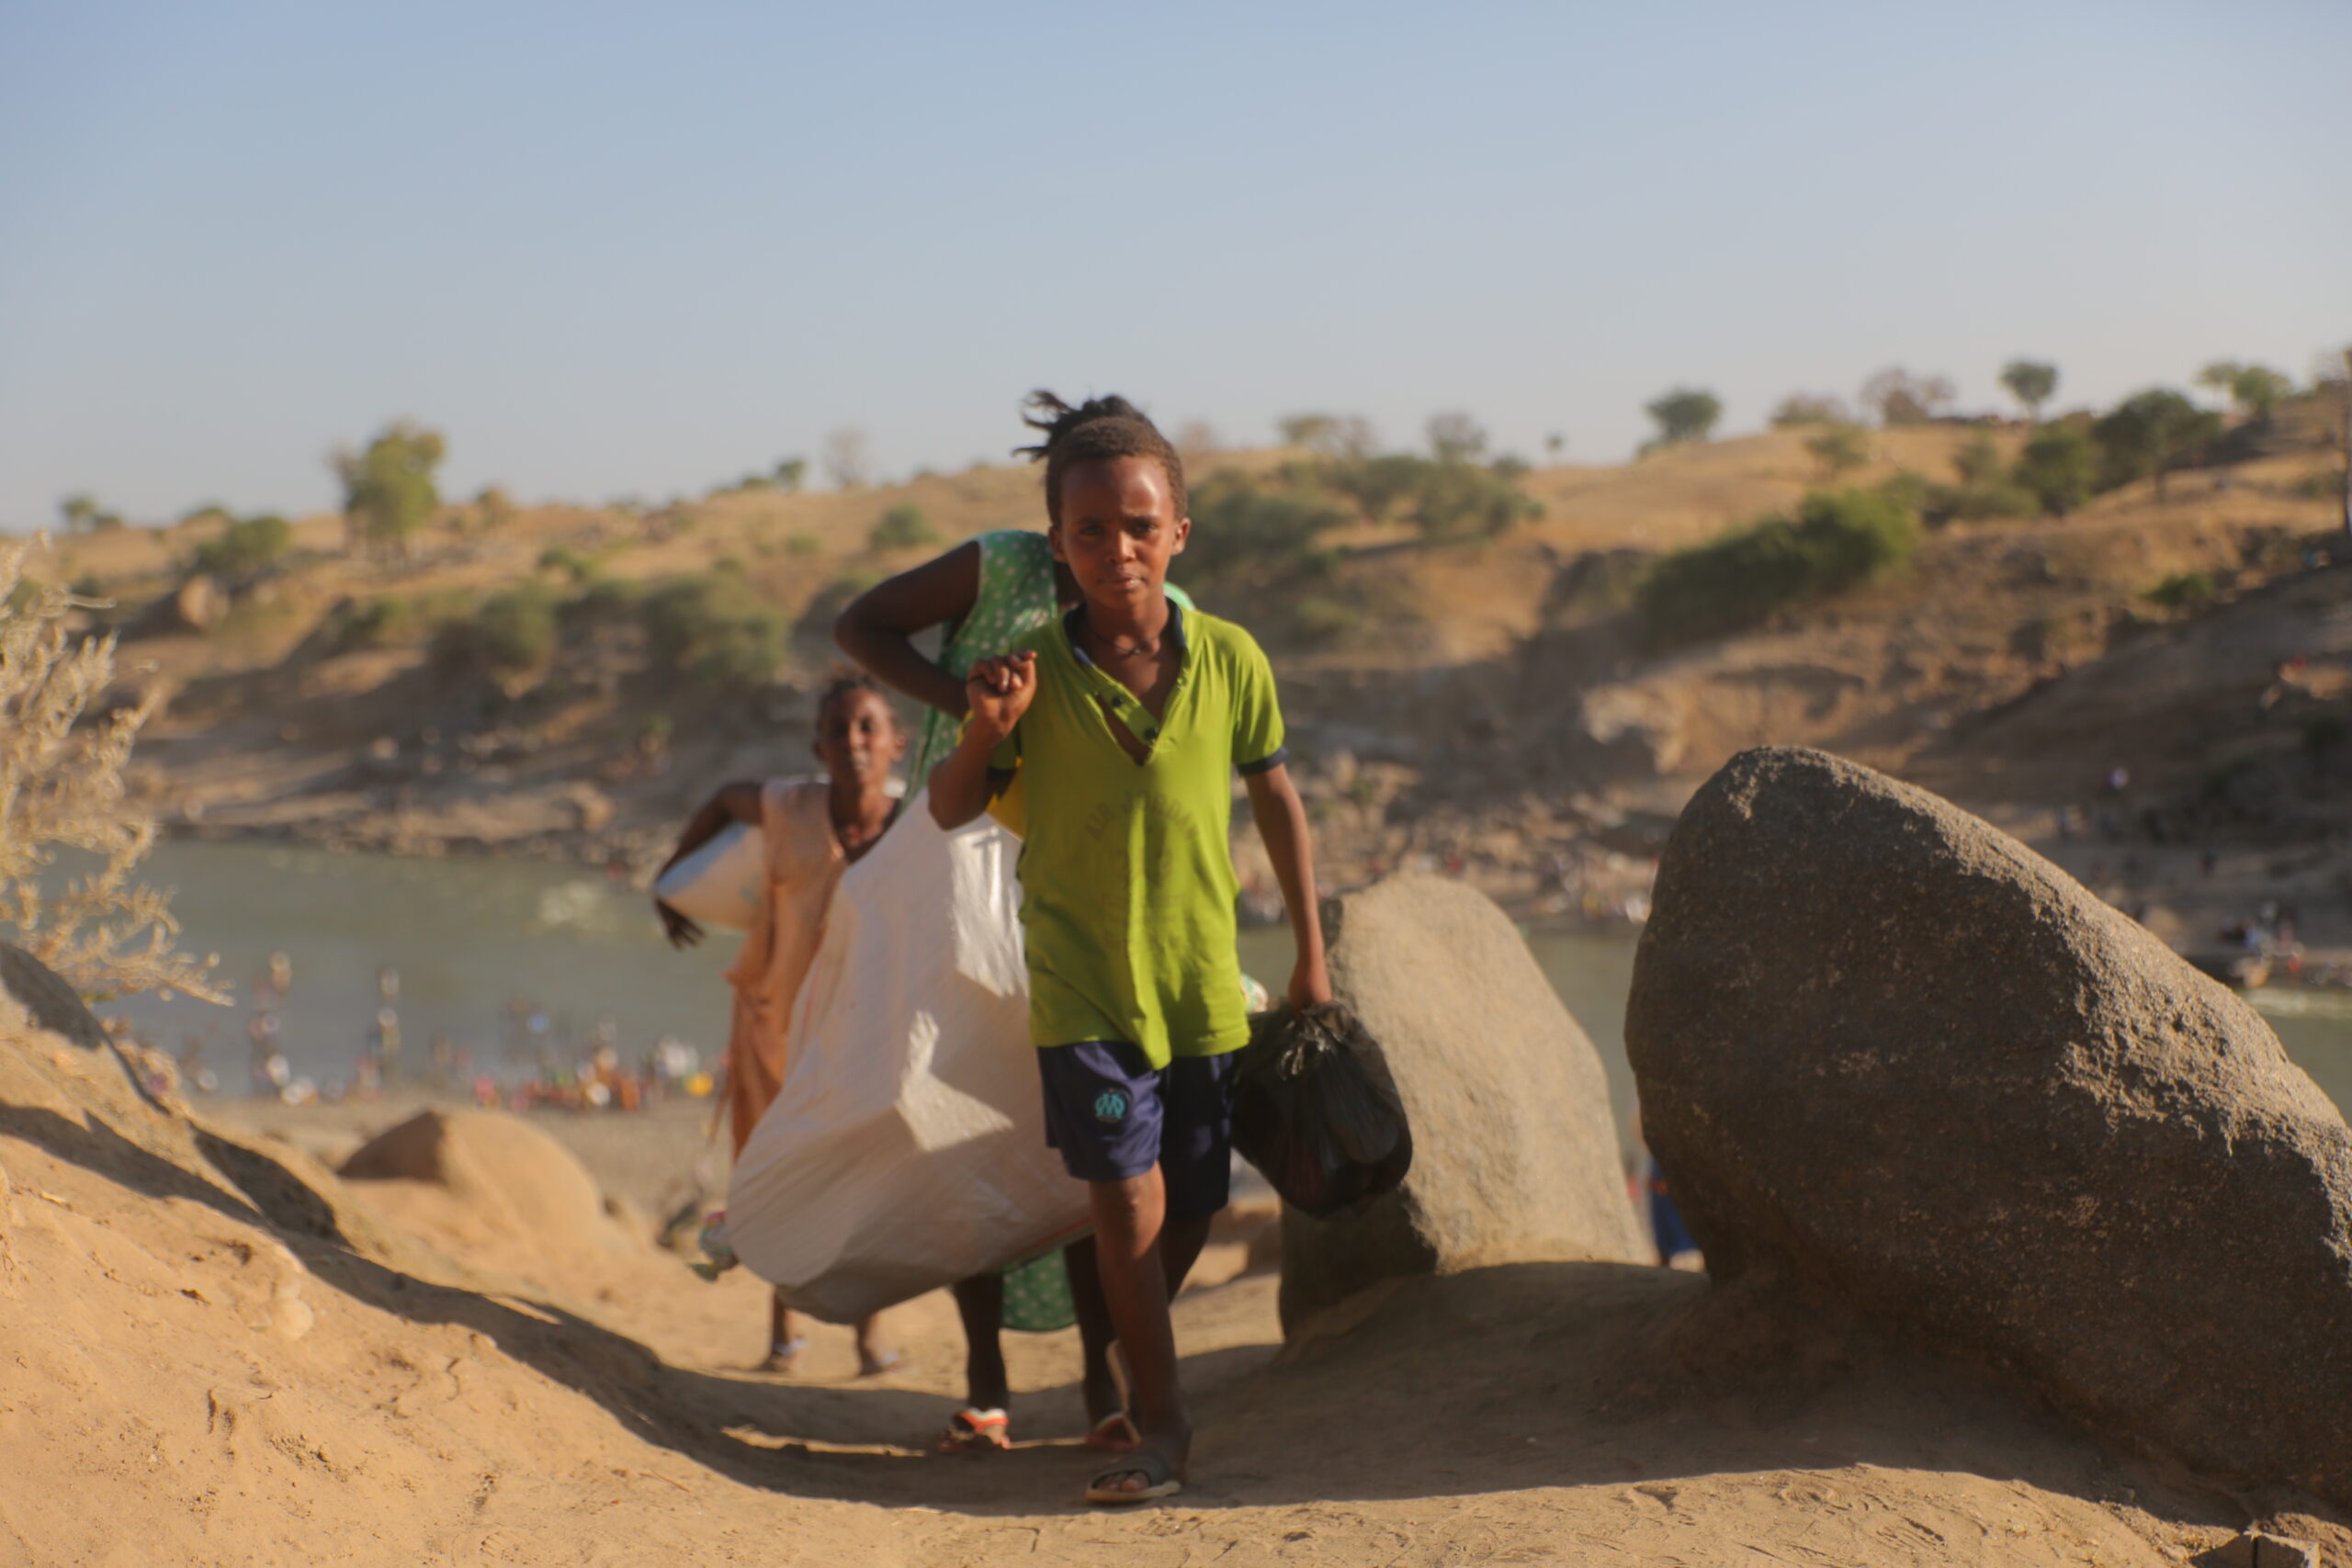 Des réfugiés éthiopiens ayant fui les violences dans la région du Tigré déchargent un bateau sur la rivière Tekezé, après avoir traversé la frontière soudanaise près de Hamdayet.